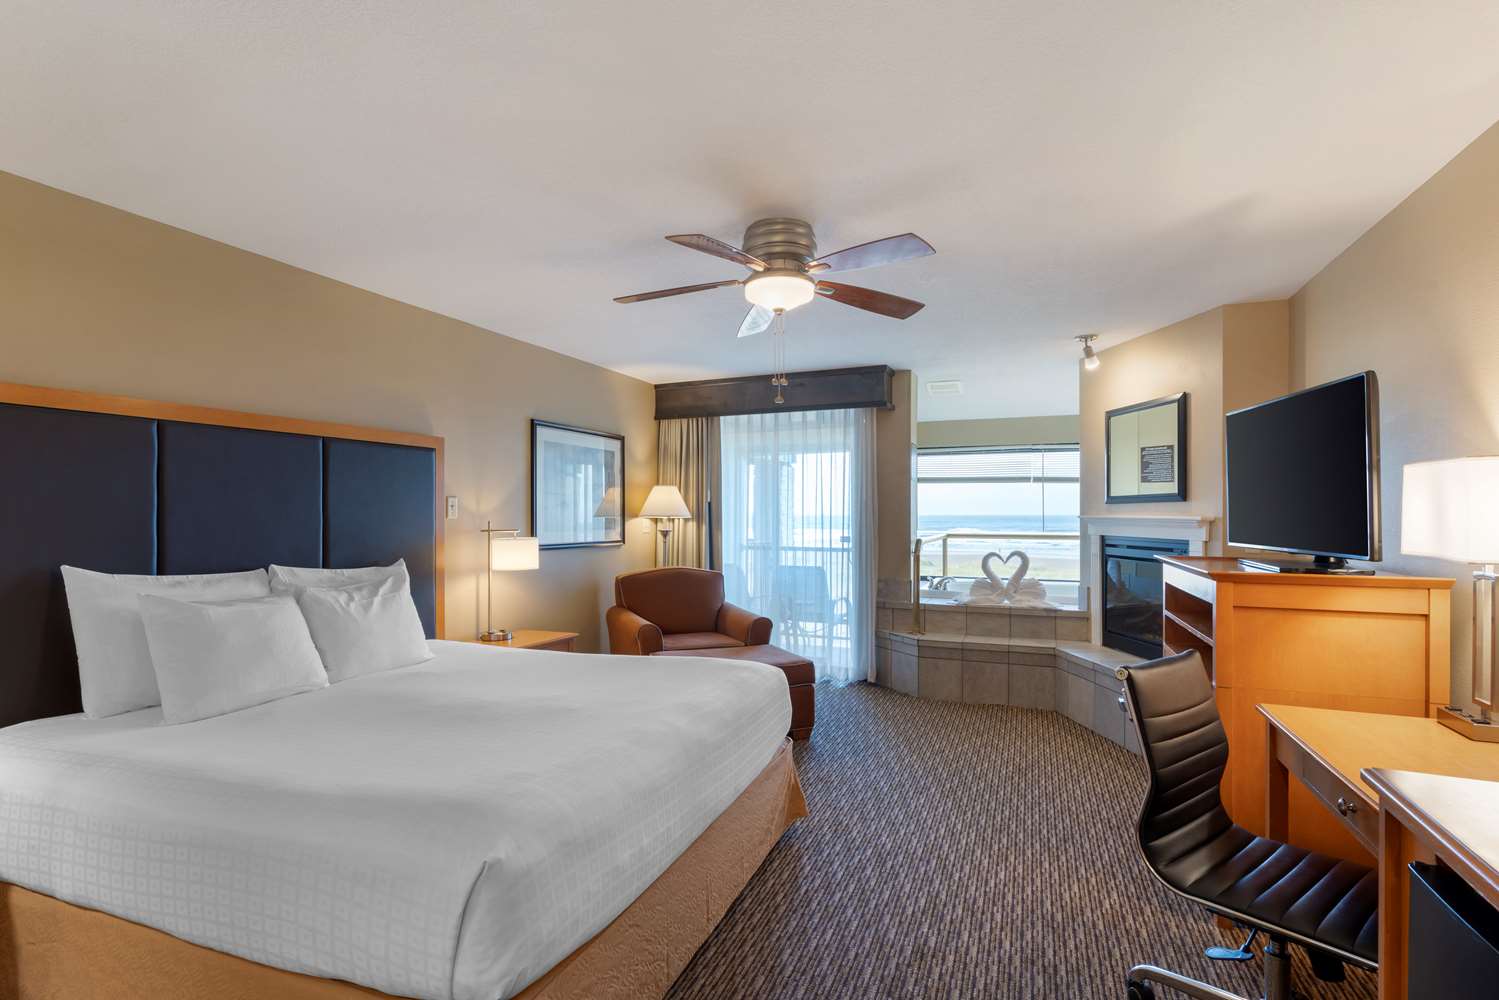 1499px x 1000px - Hotel in Seaside | Best Western Plus Ocean View Resort